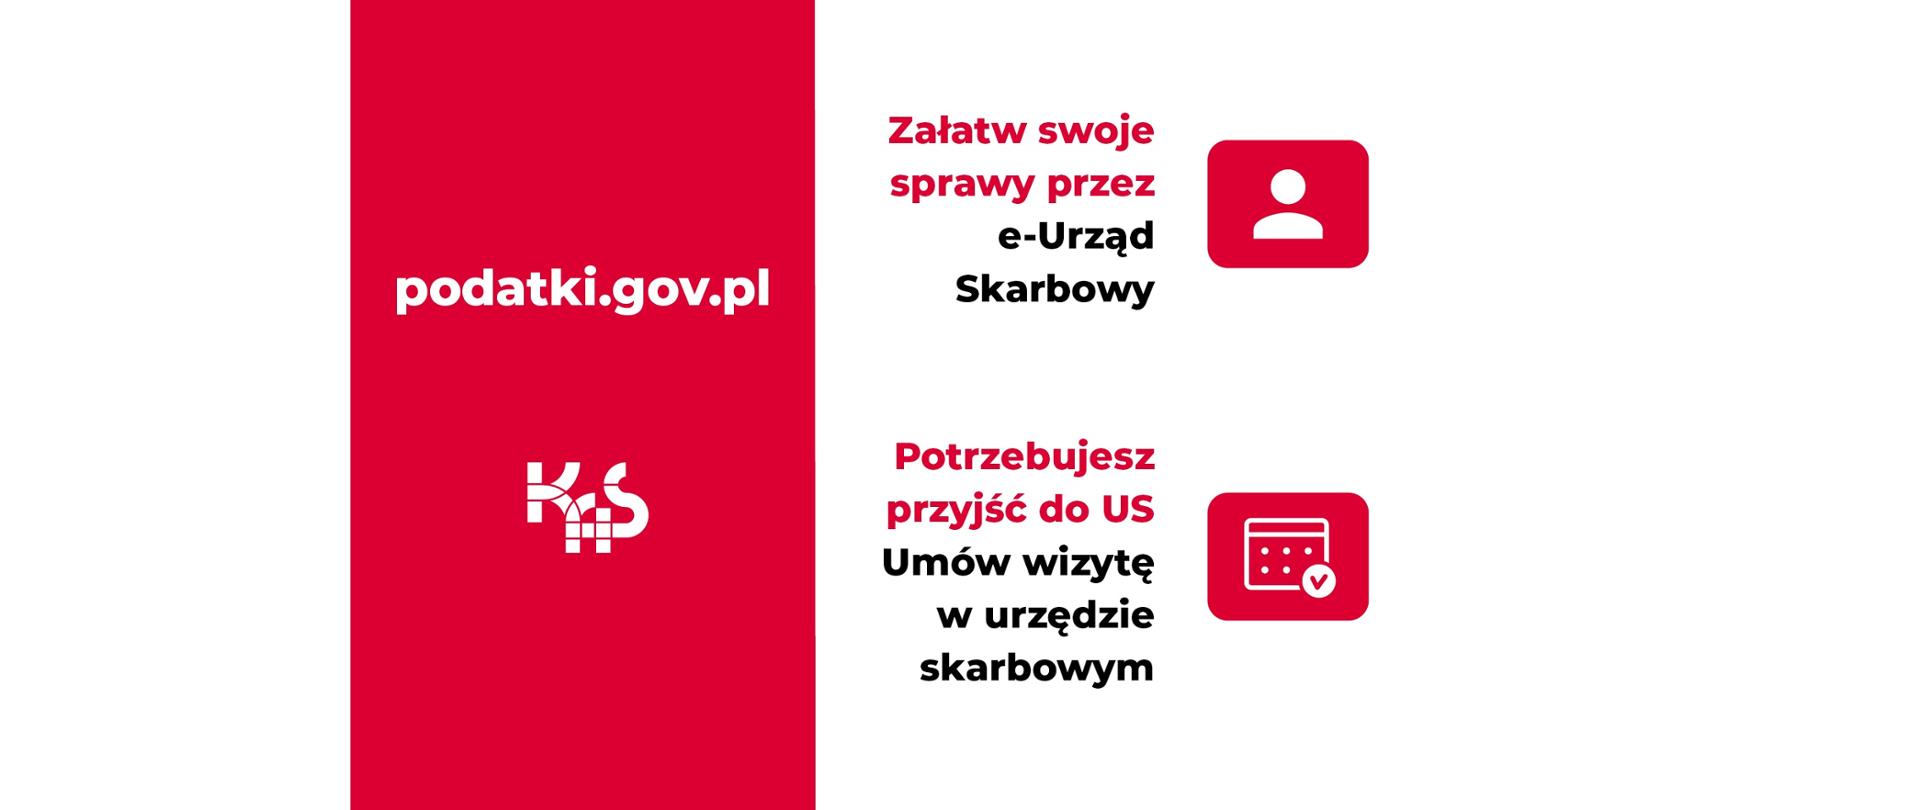 W prawej połowie czerwone tło z napisem podatki.gov.pl oraz KAS, z prawej strony napis: Załatw swoje sprawy przez e-Urząd Skarbowy, Potrzebujesz przyjść do US Umów wizytę w urzędzie skarbowym